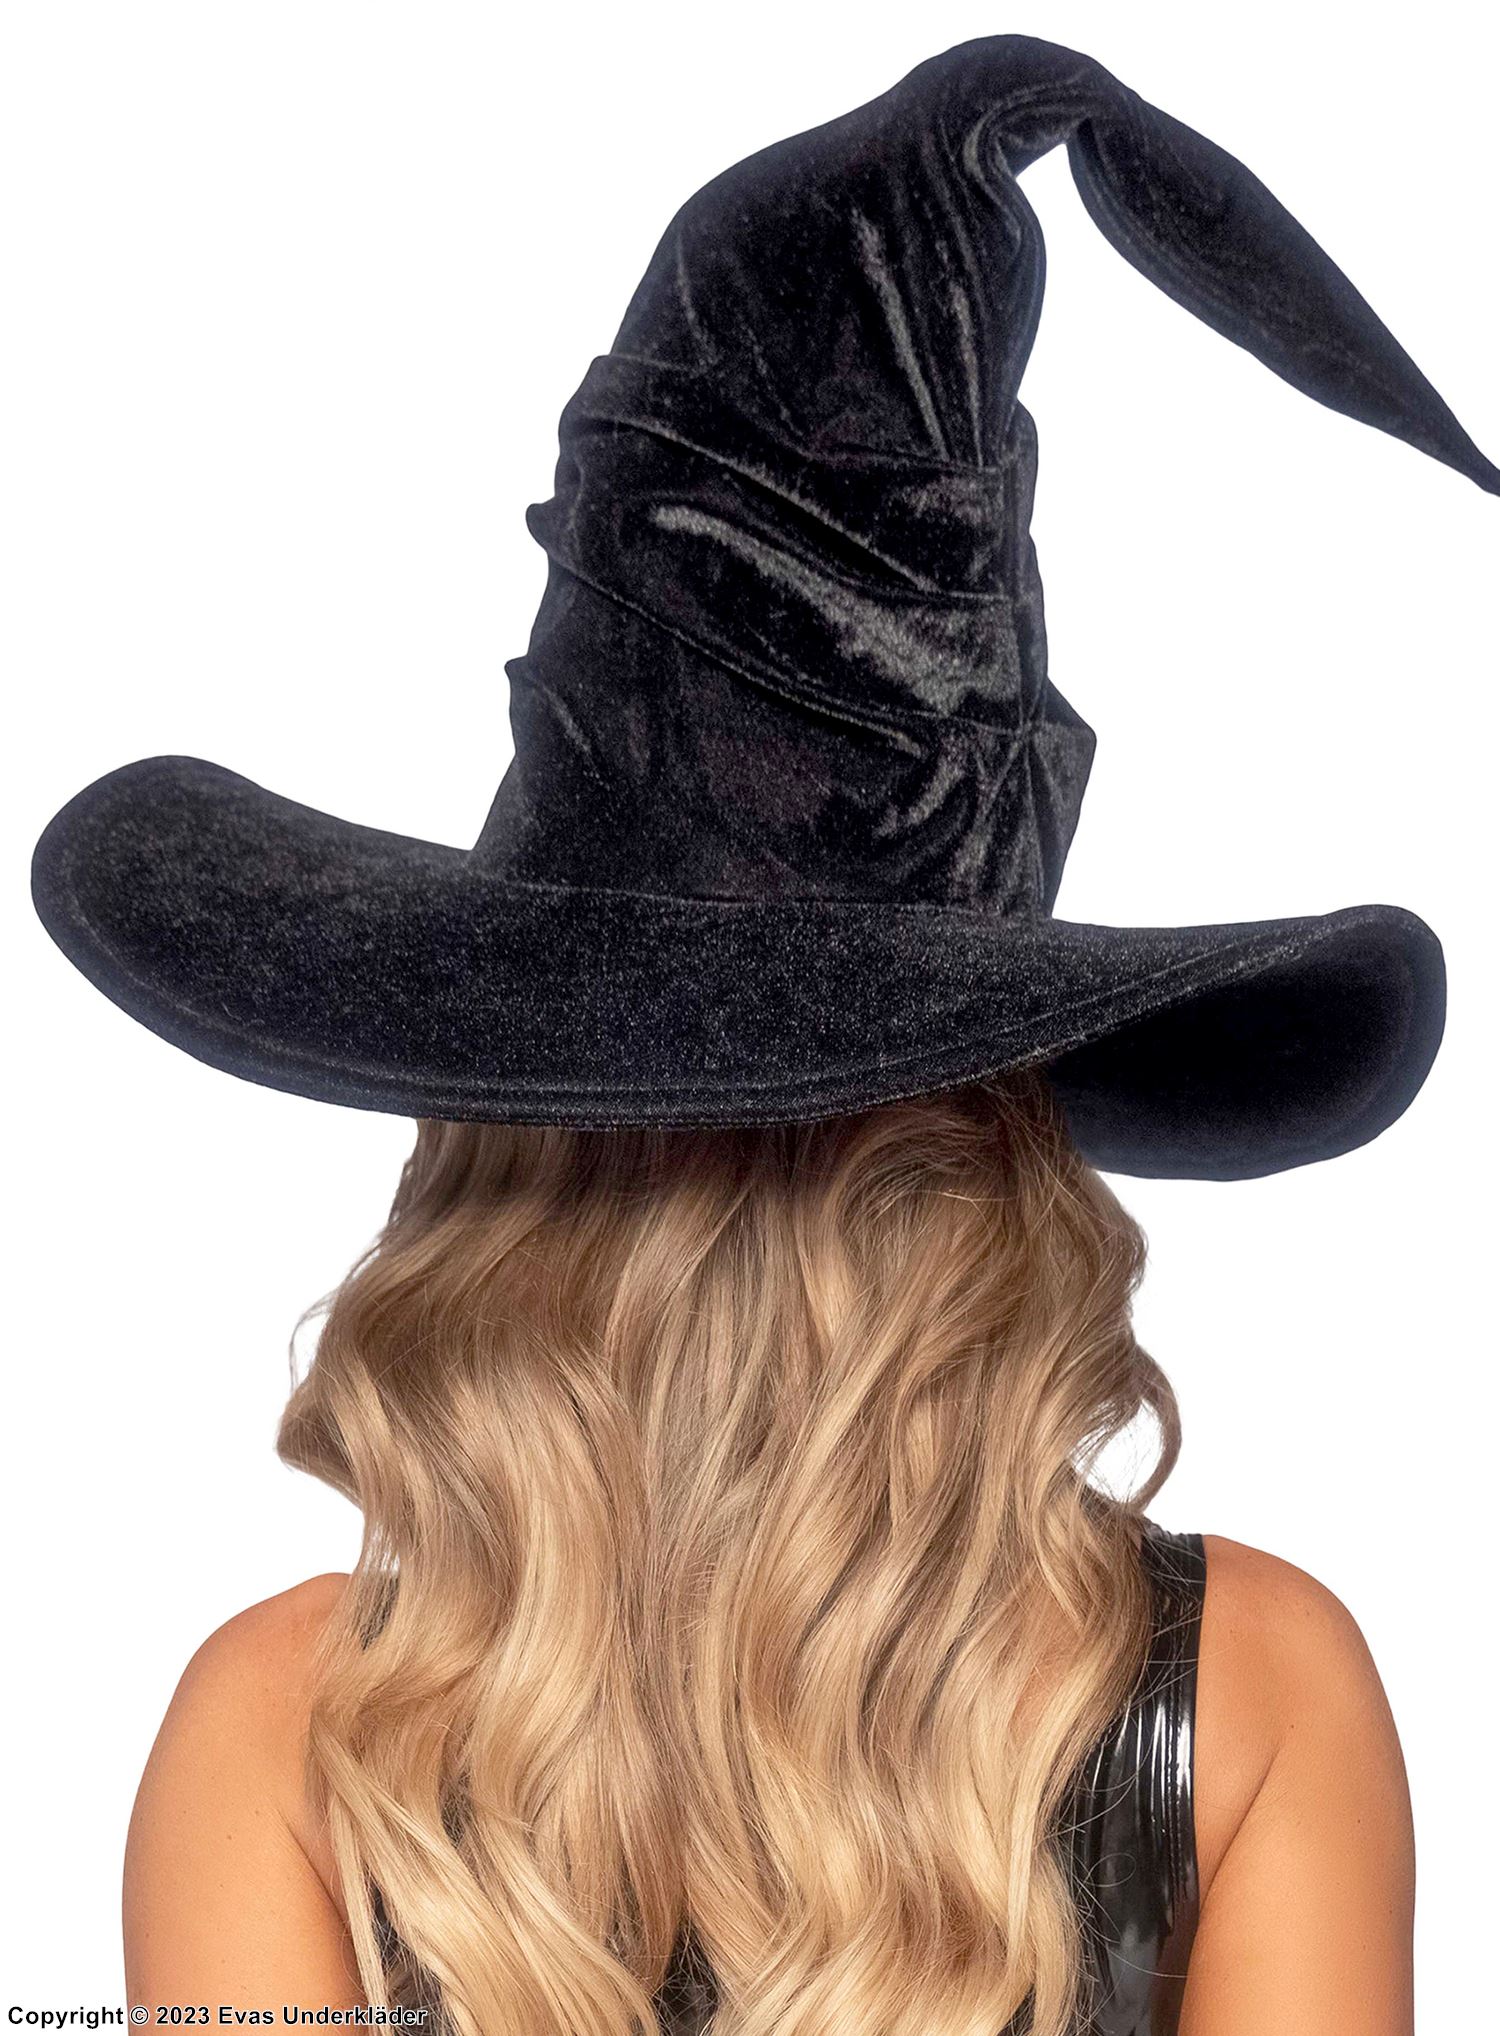 Witch, costume hat, velvet